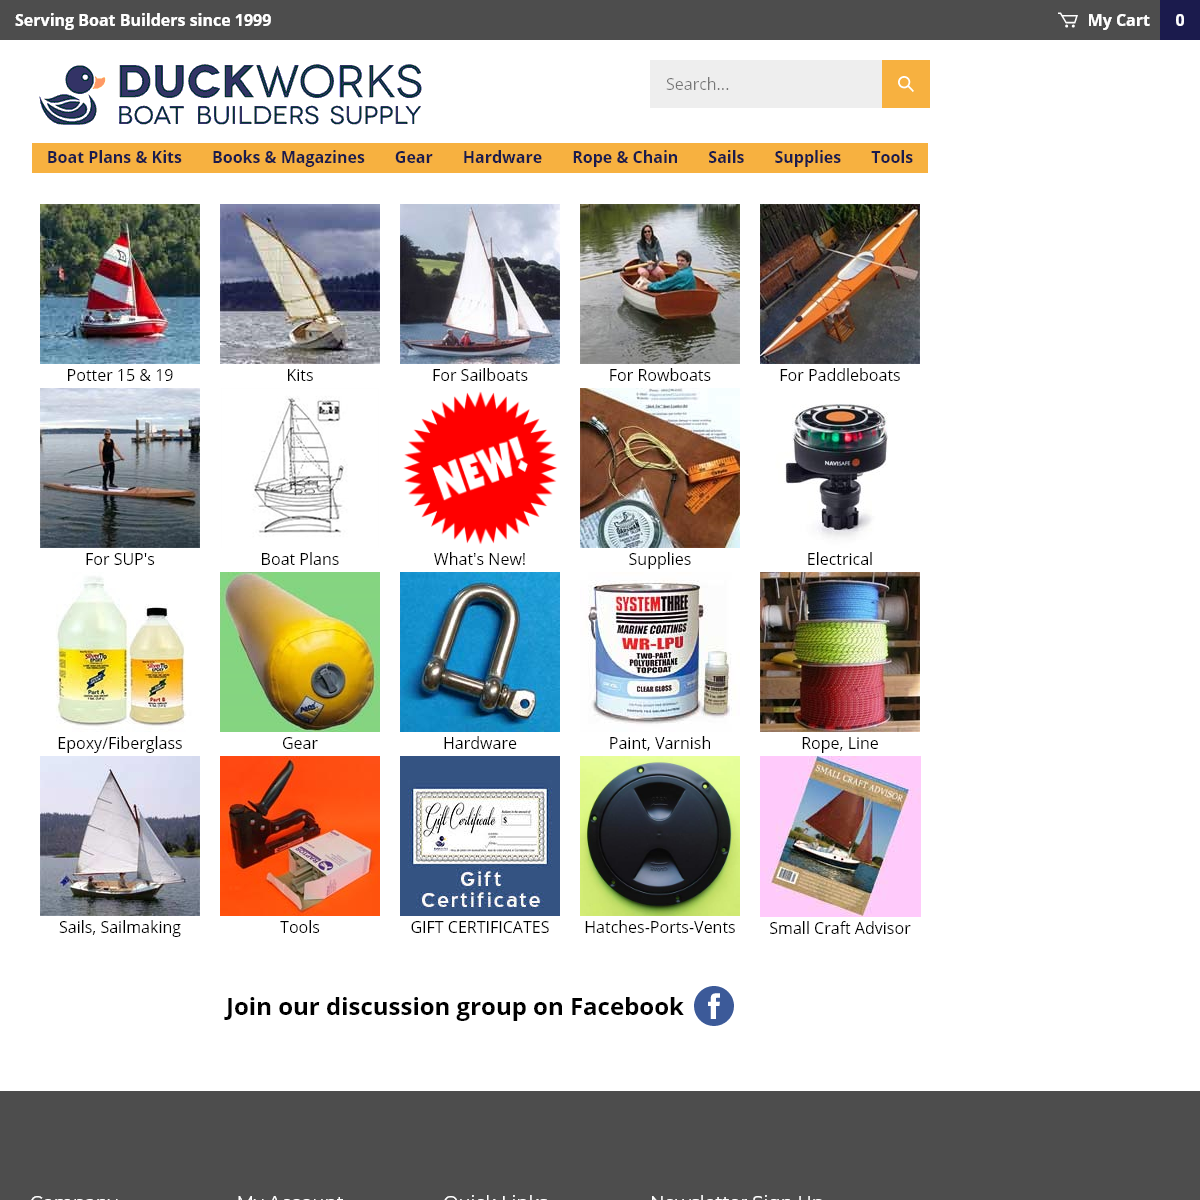 A complete backup of duckworks.com